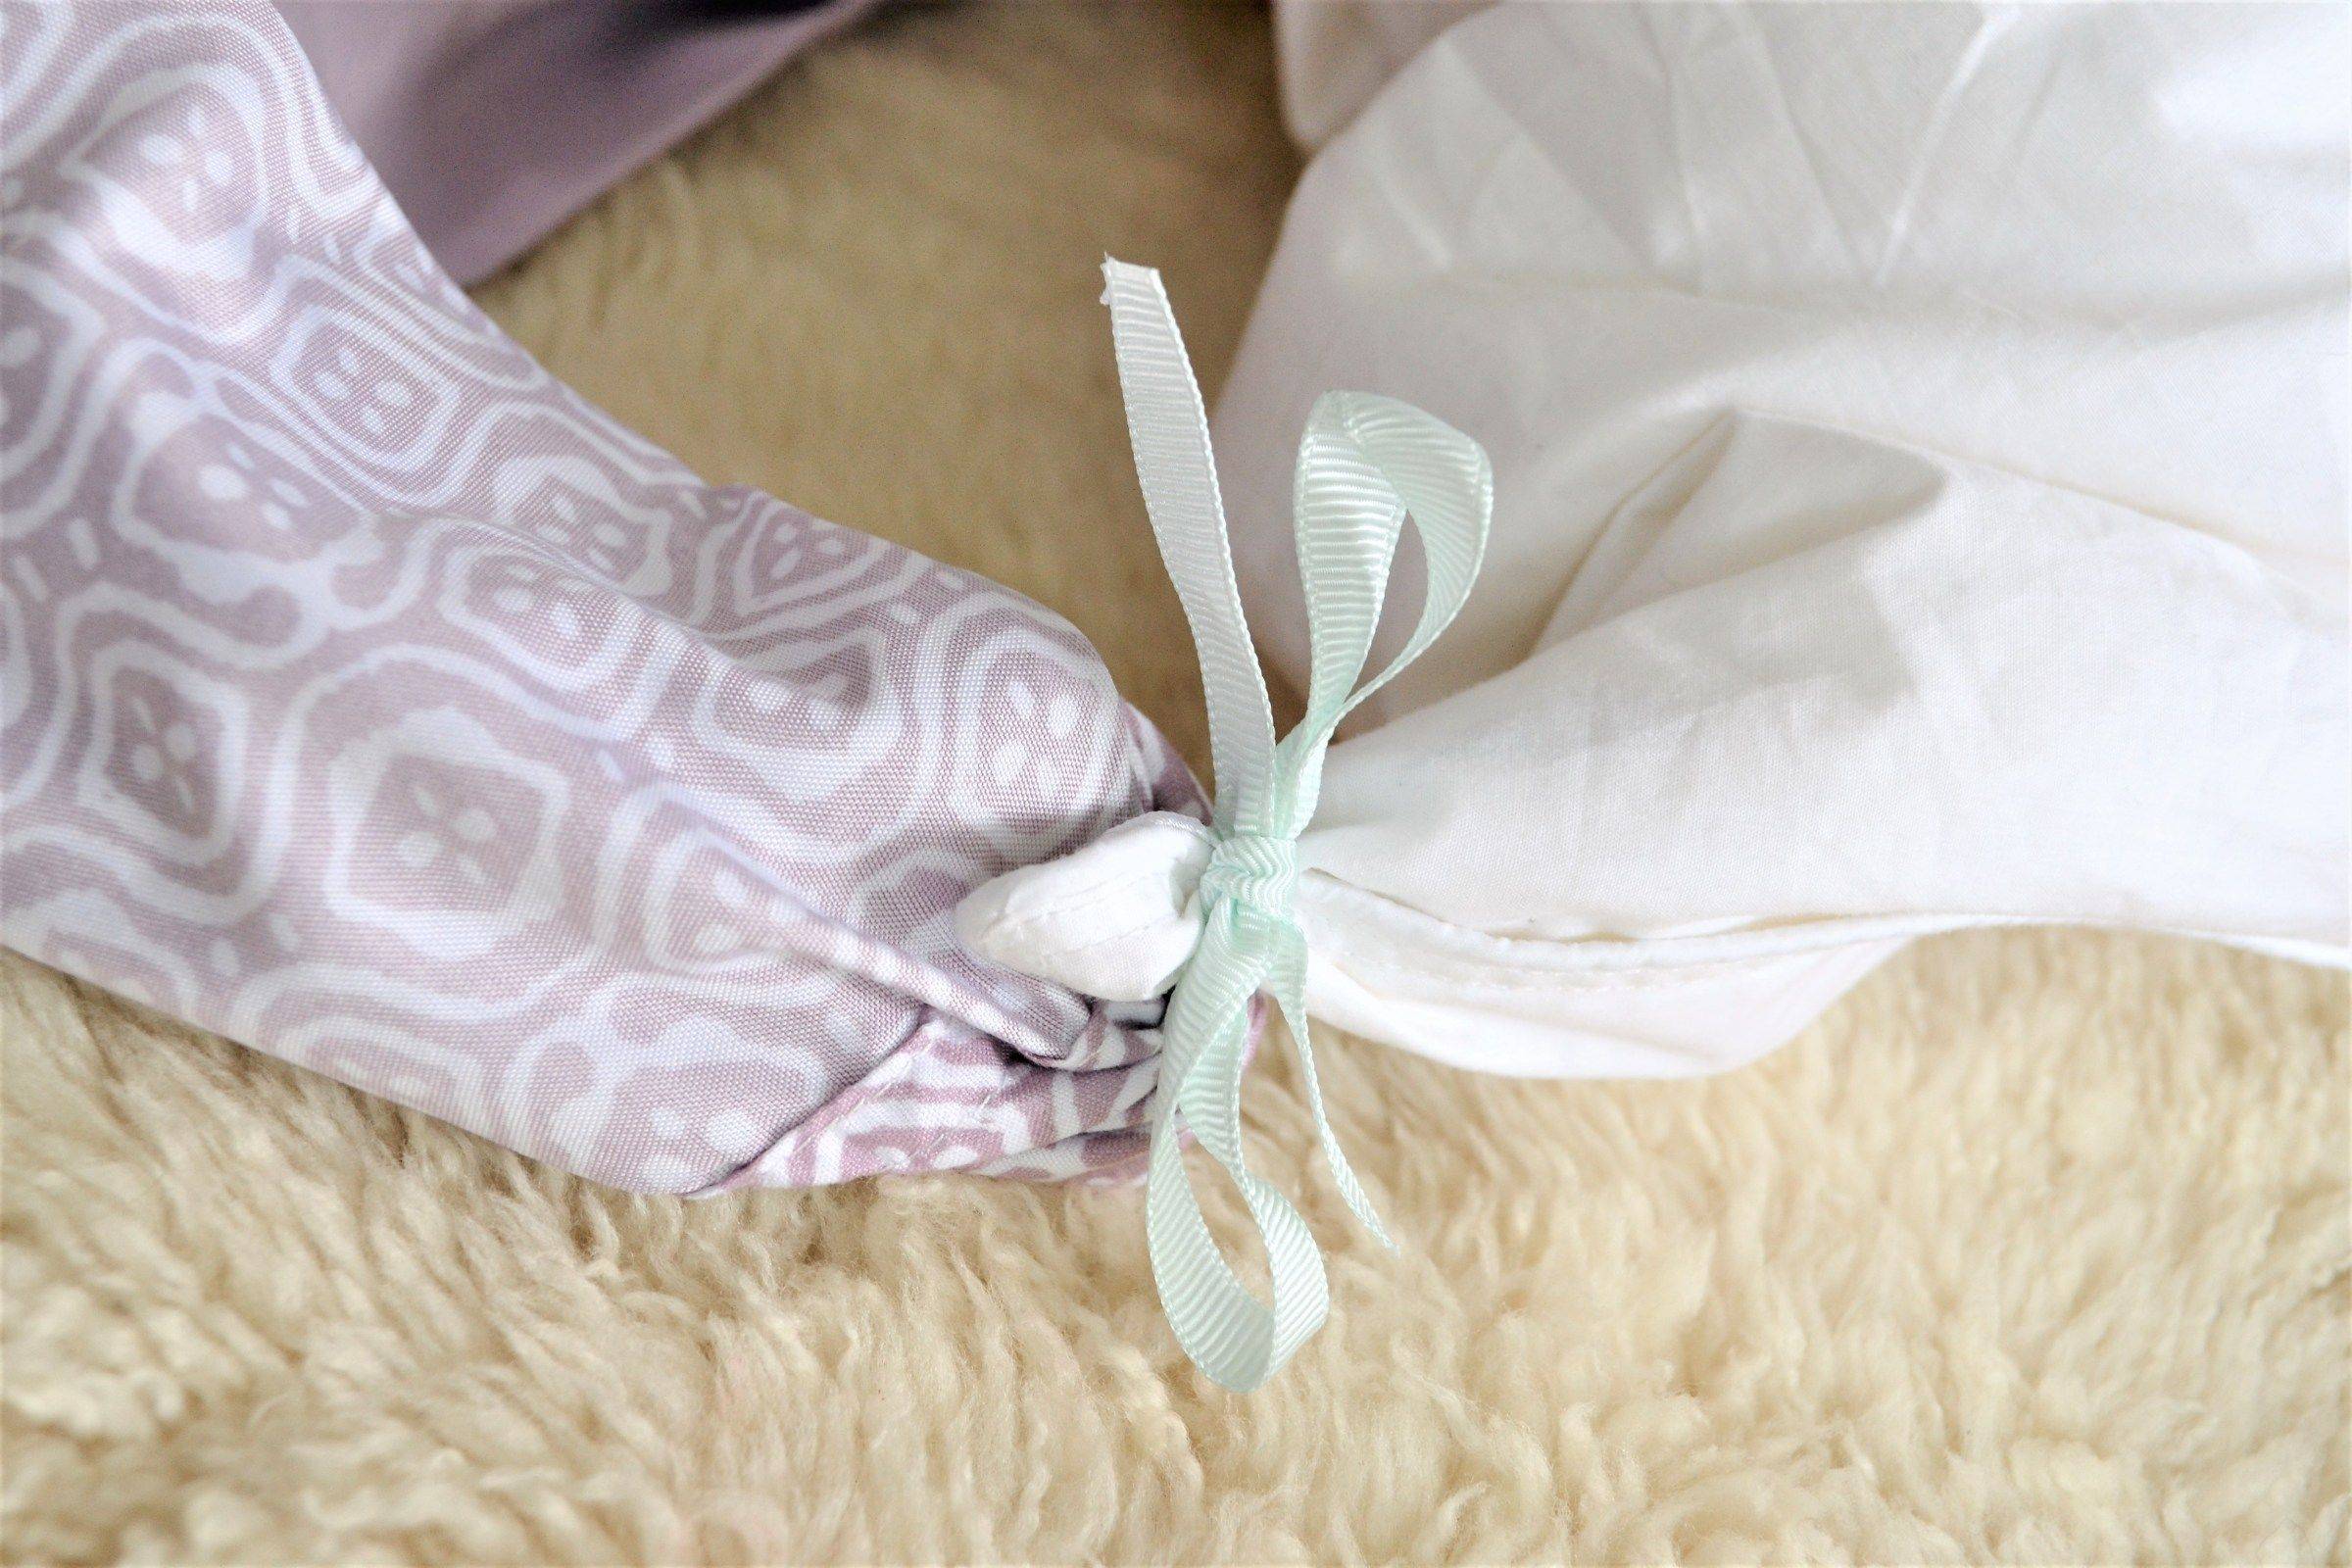 Как лучше организовать хранение постельного белья? – 7 отличных идей для тех, кто любит когда «все по полочкам»